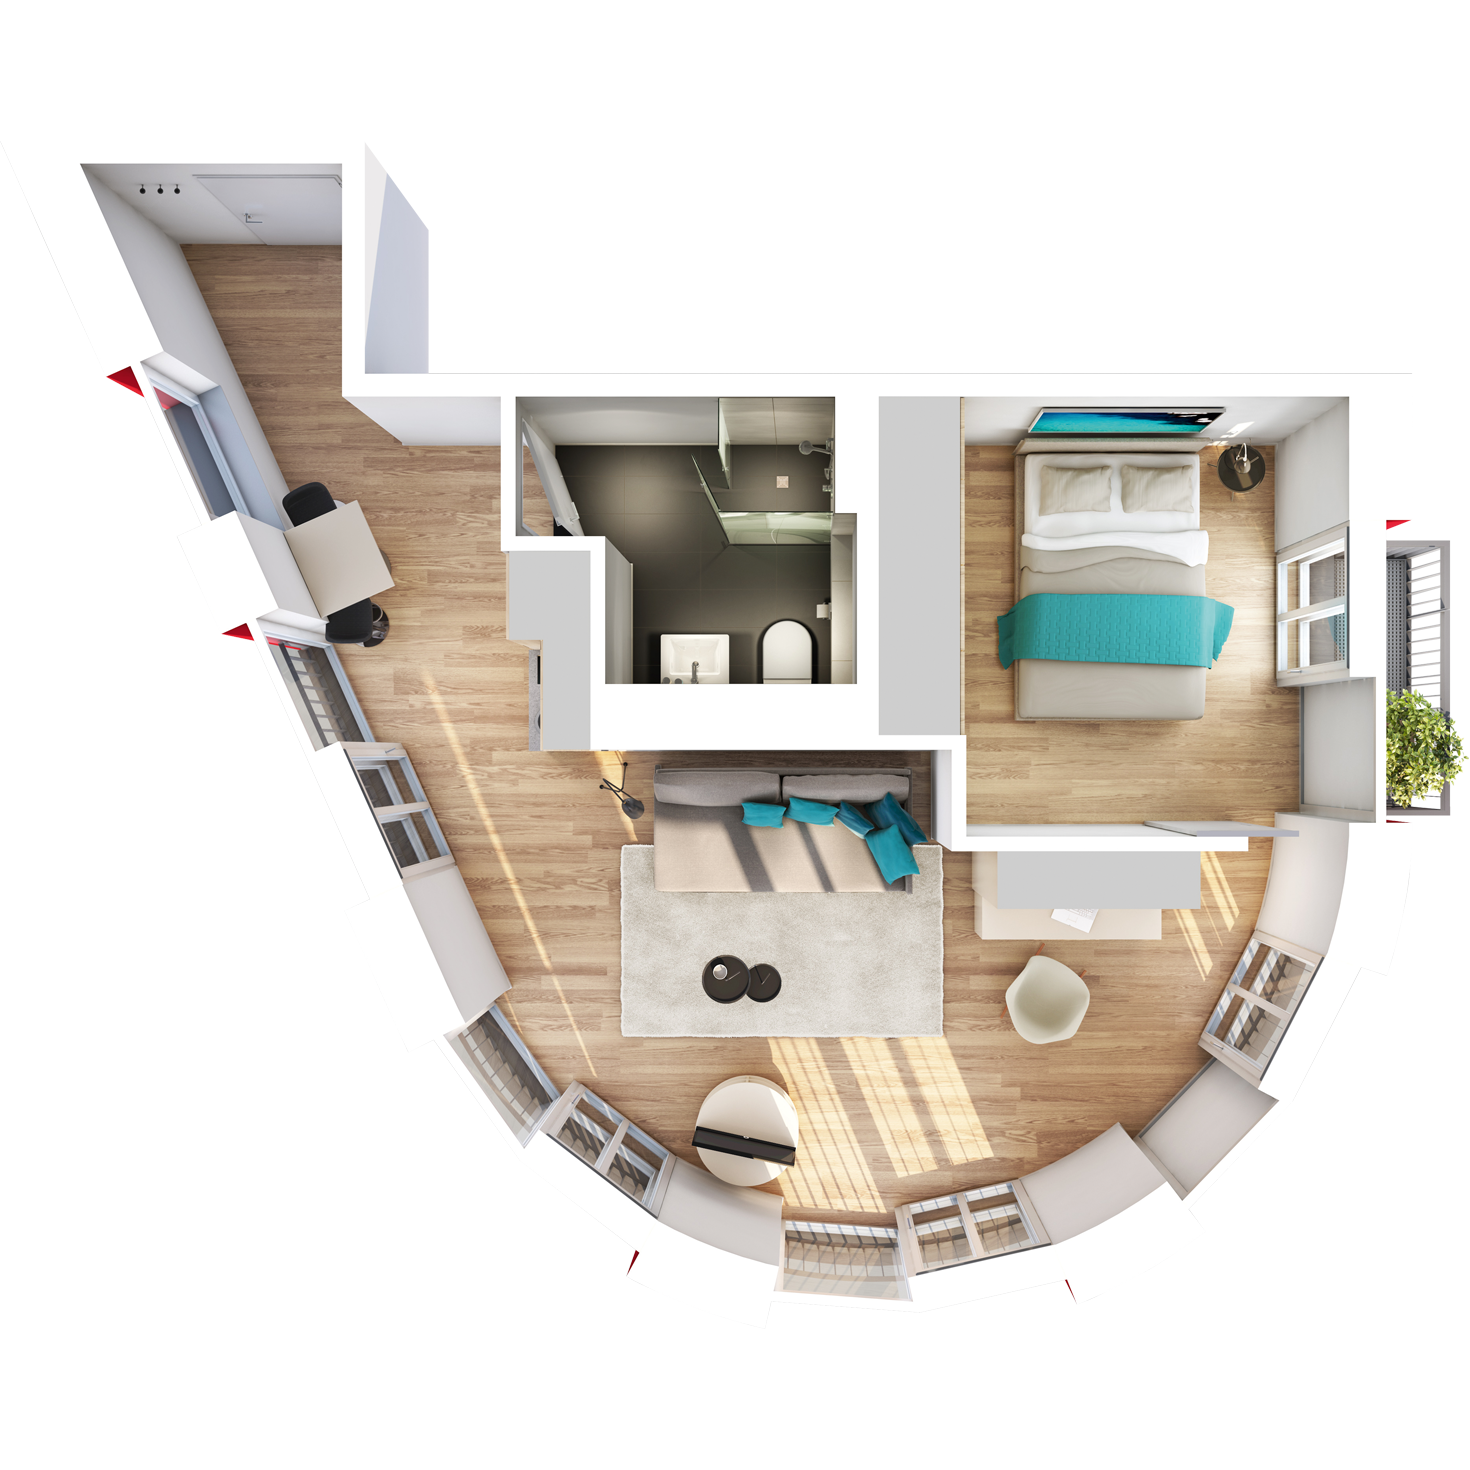 Visualisierung Beispiel 1,5-Zimmer-Boarding-Apartment Typ J mit exklusivem, halbrunden Wohnschnitt mit Bad, abgetrennter Küche, großem Wohn- und separatem Schlafbereich und Balkon im studiosus 5 Apartmenthaus in Augsburg